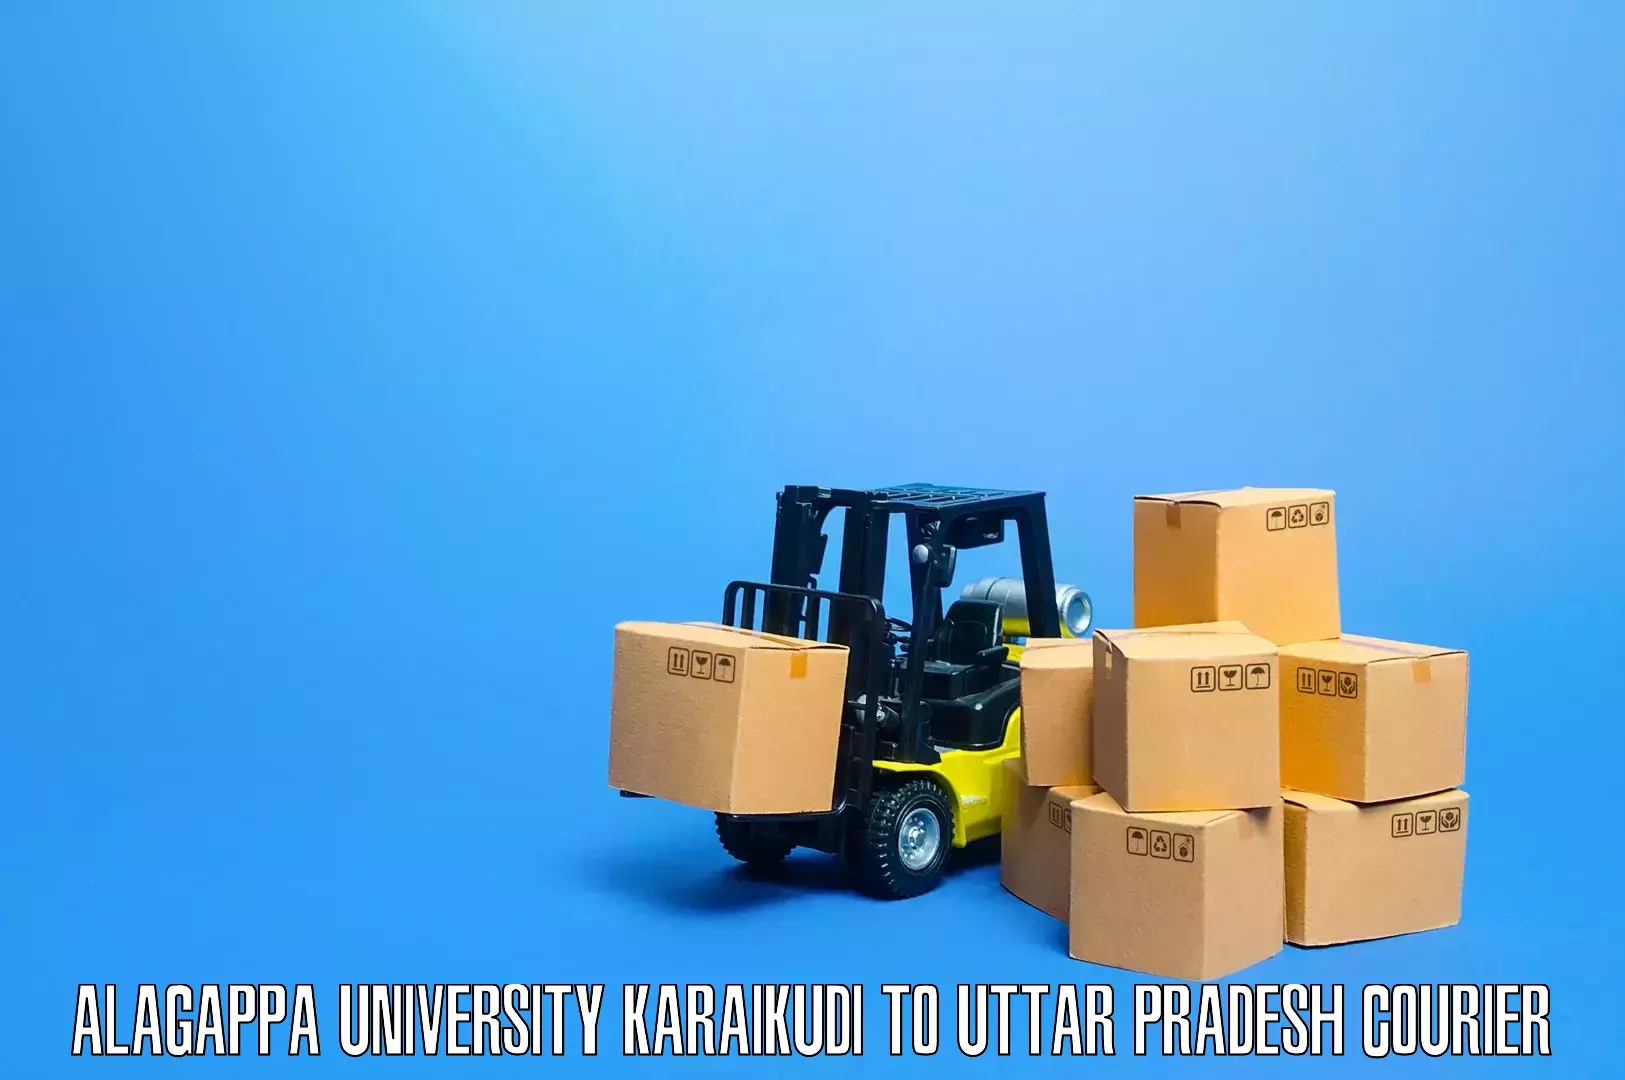 Skilled movers in Alagappa University Karaikudi to Kanpur